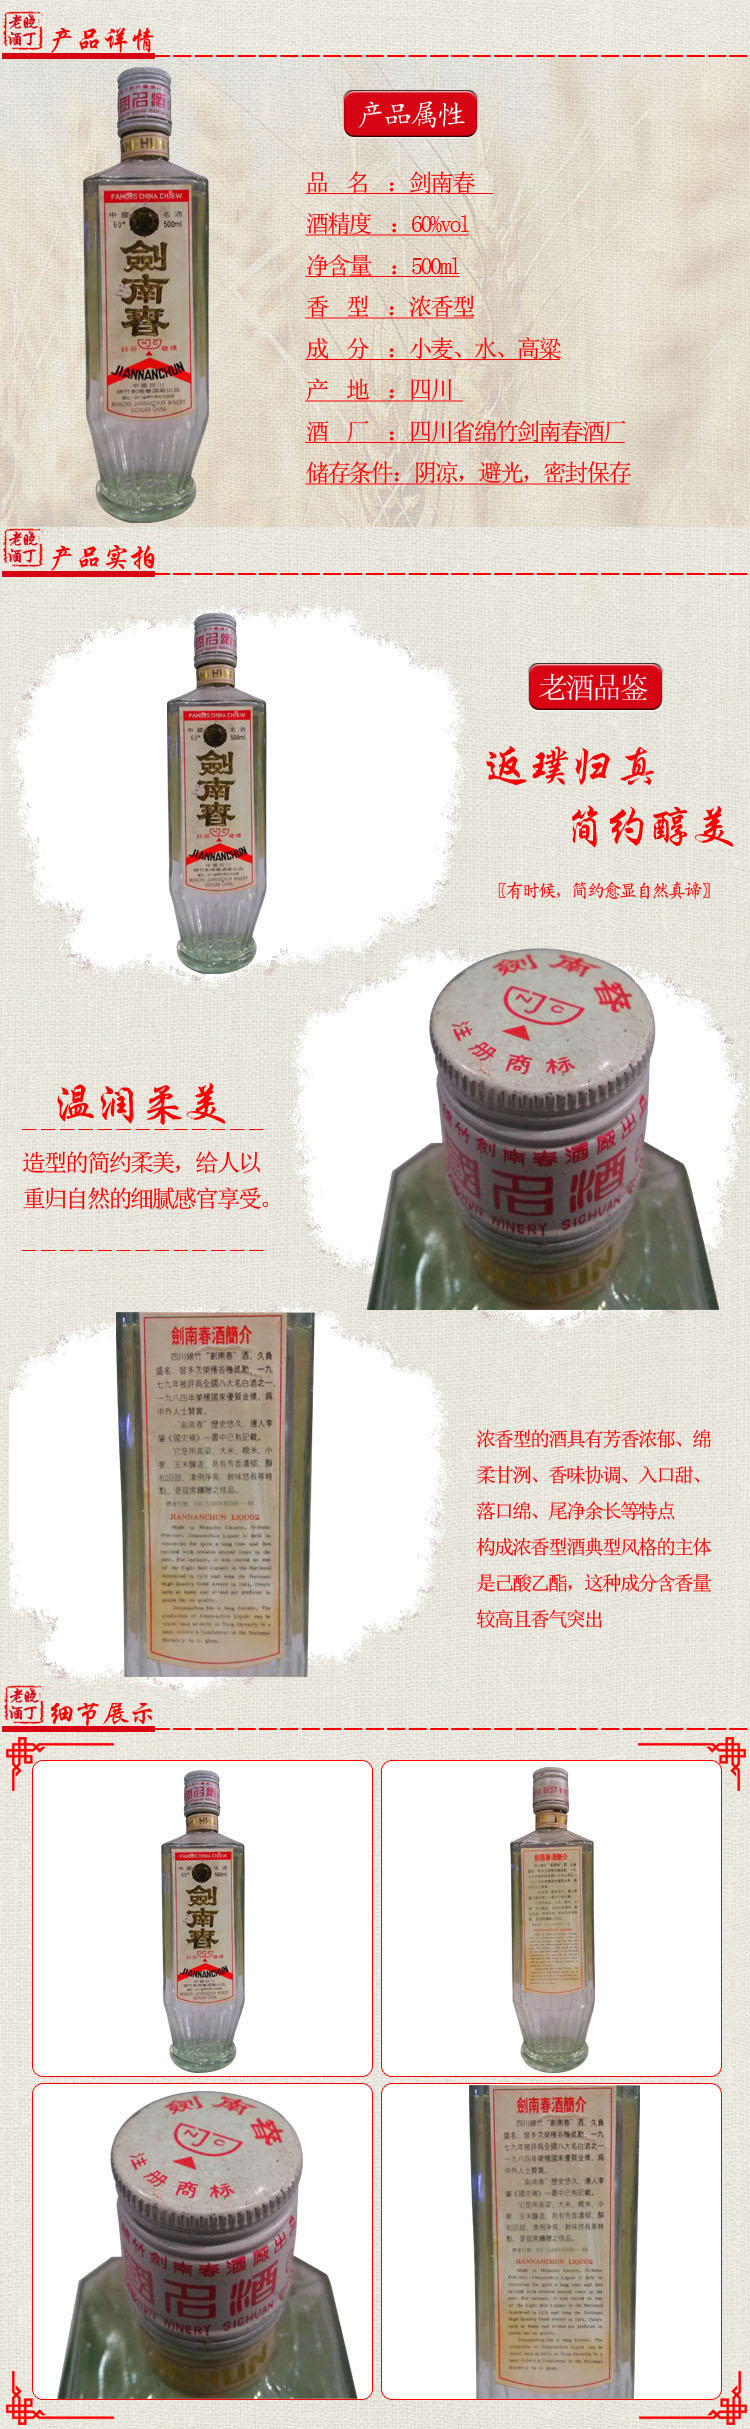 重庆专业老酒回收网_重庆白酒多少钱-重庆诚礼商贸有限公司